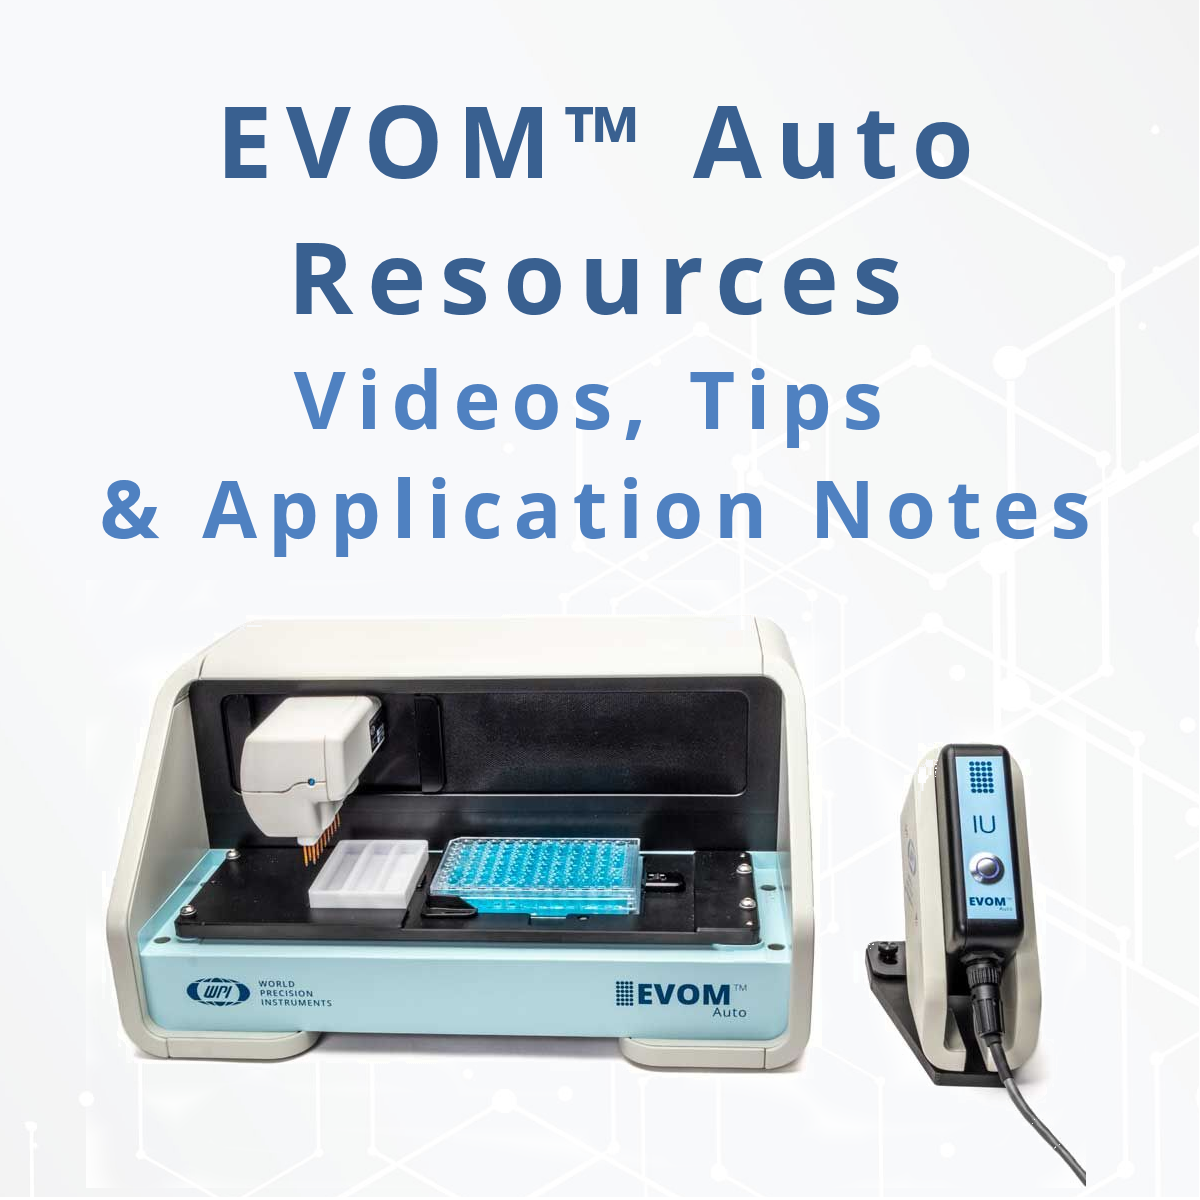 EVOM™ Auto Resources